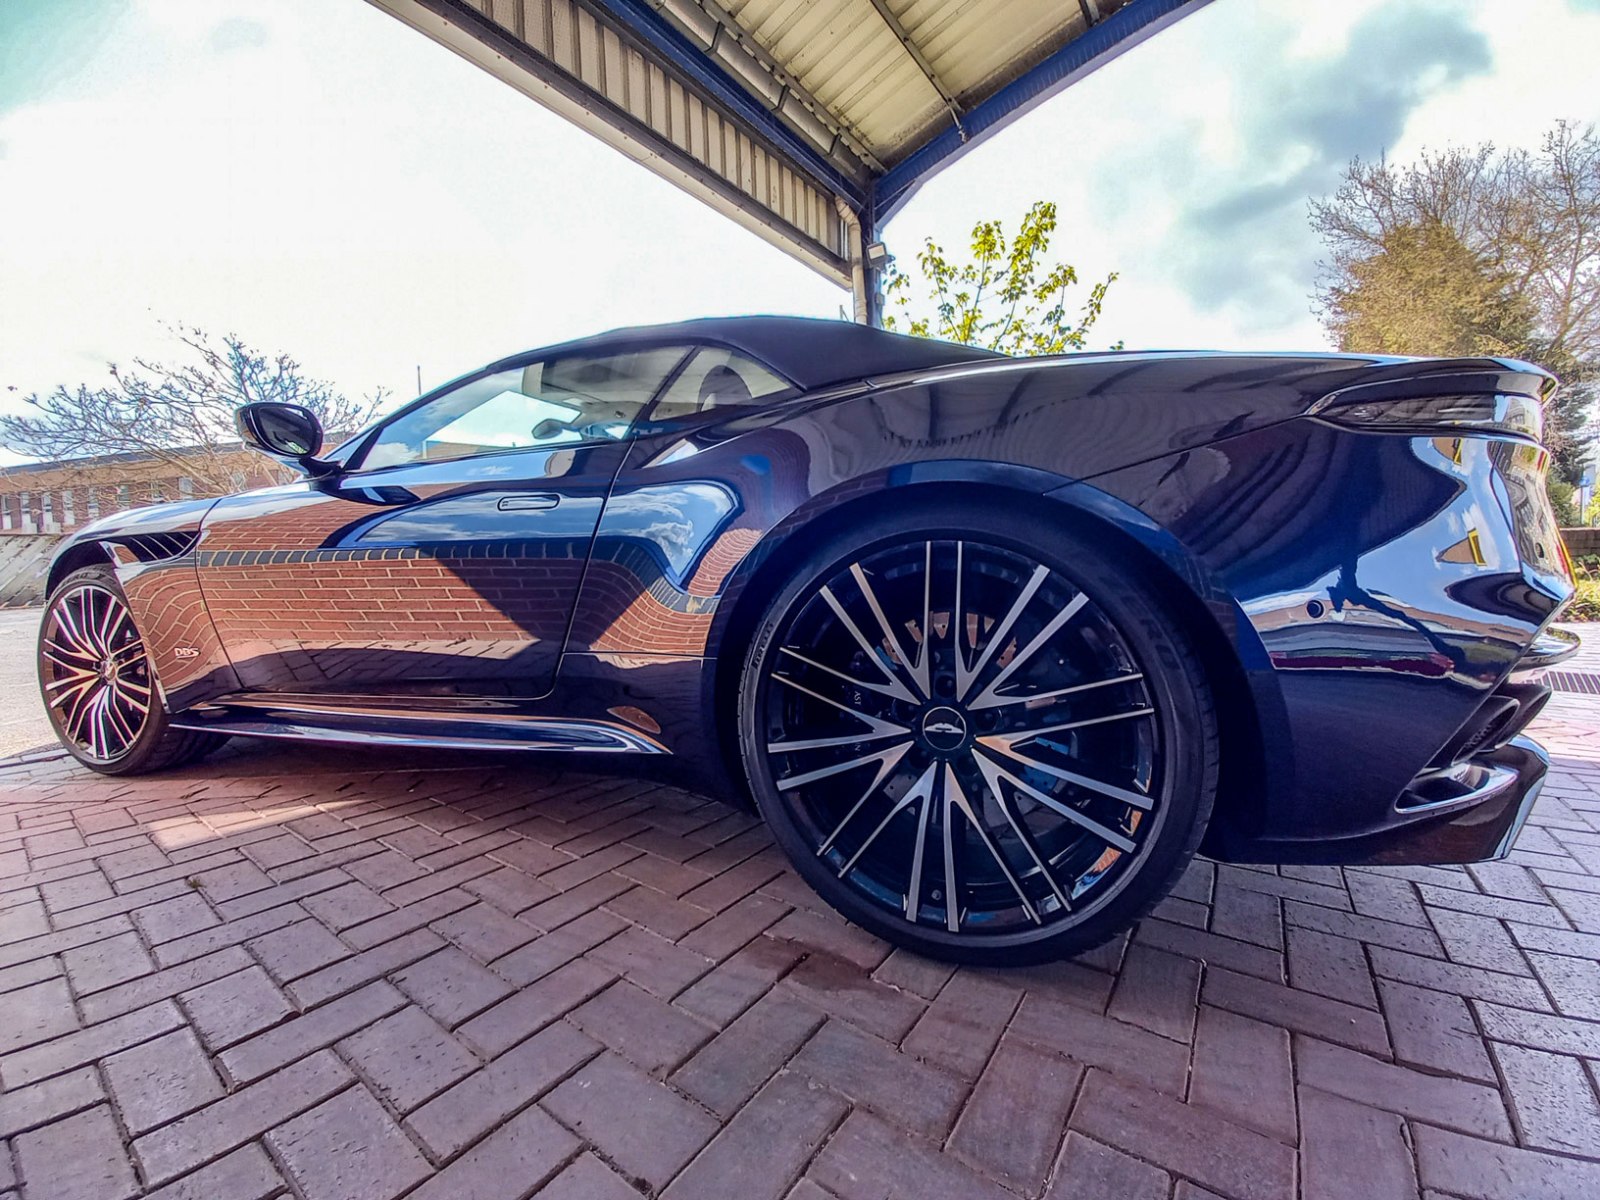 Shiny Aston-Martin